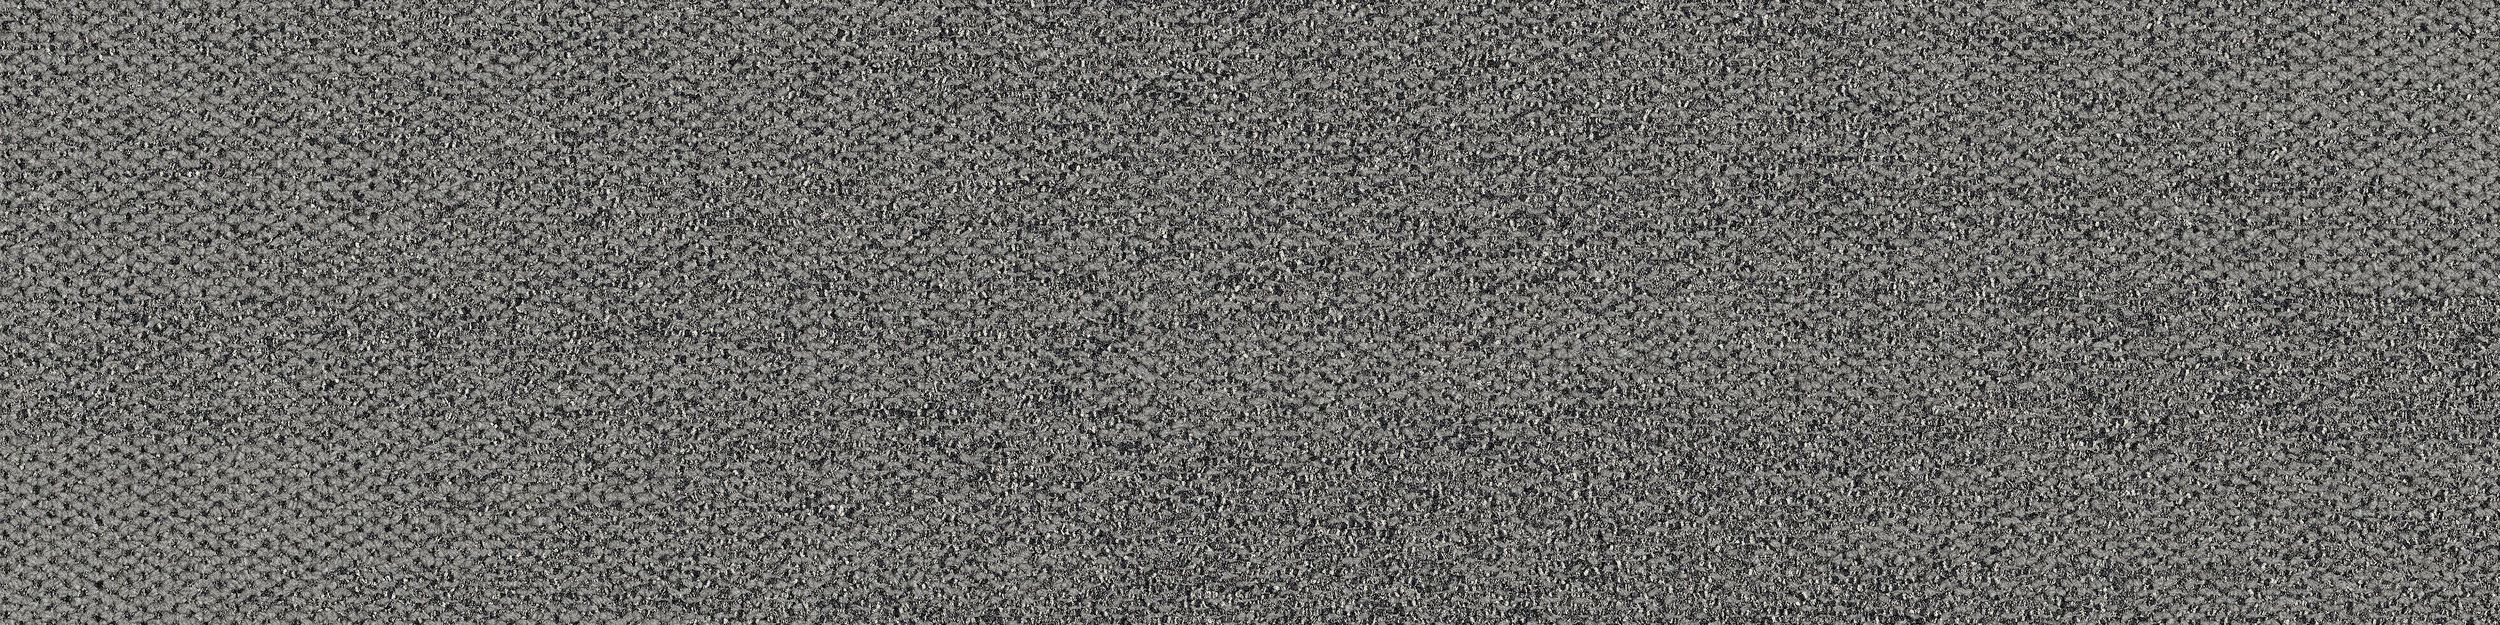 Open Air 410 Carpet Tile In Flannel imagen número 2